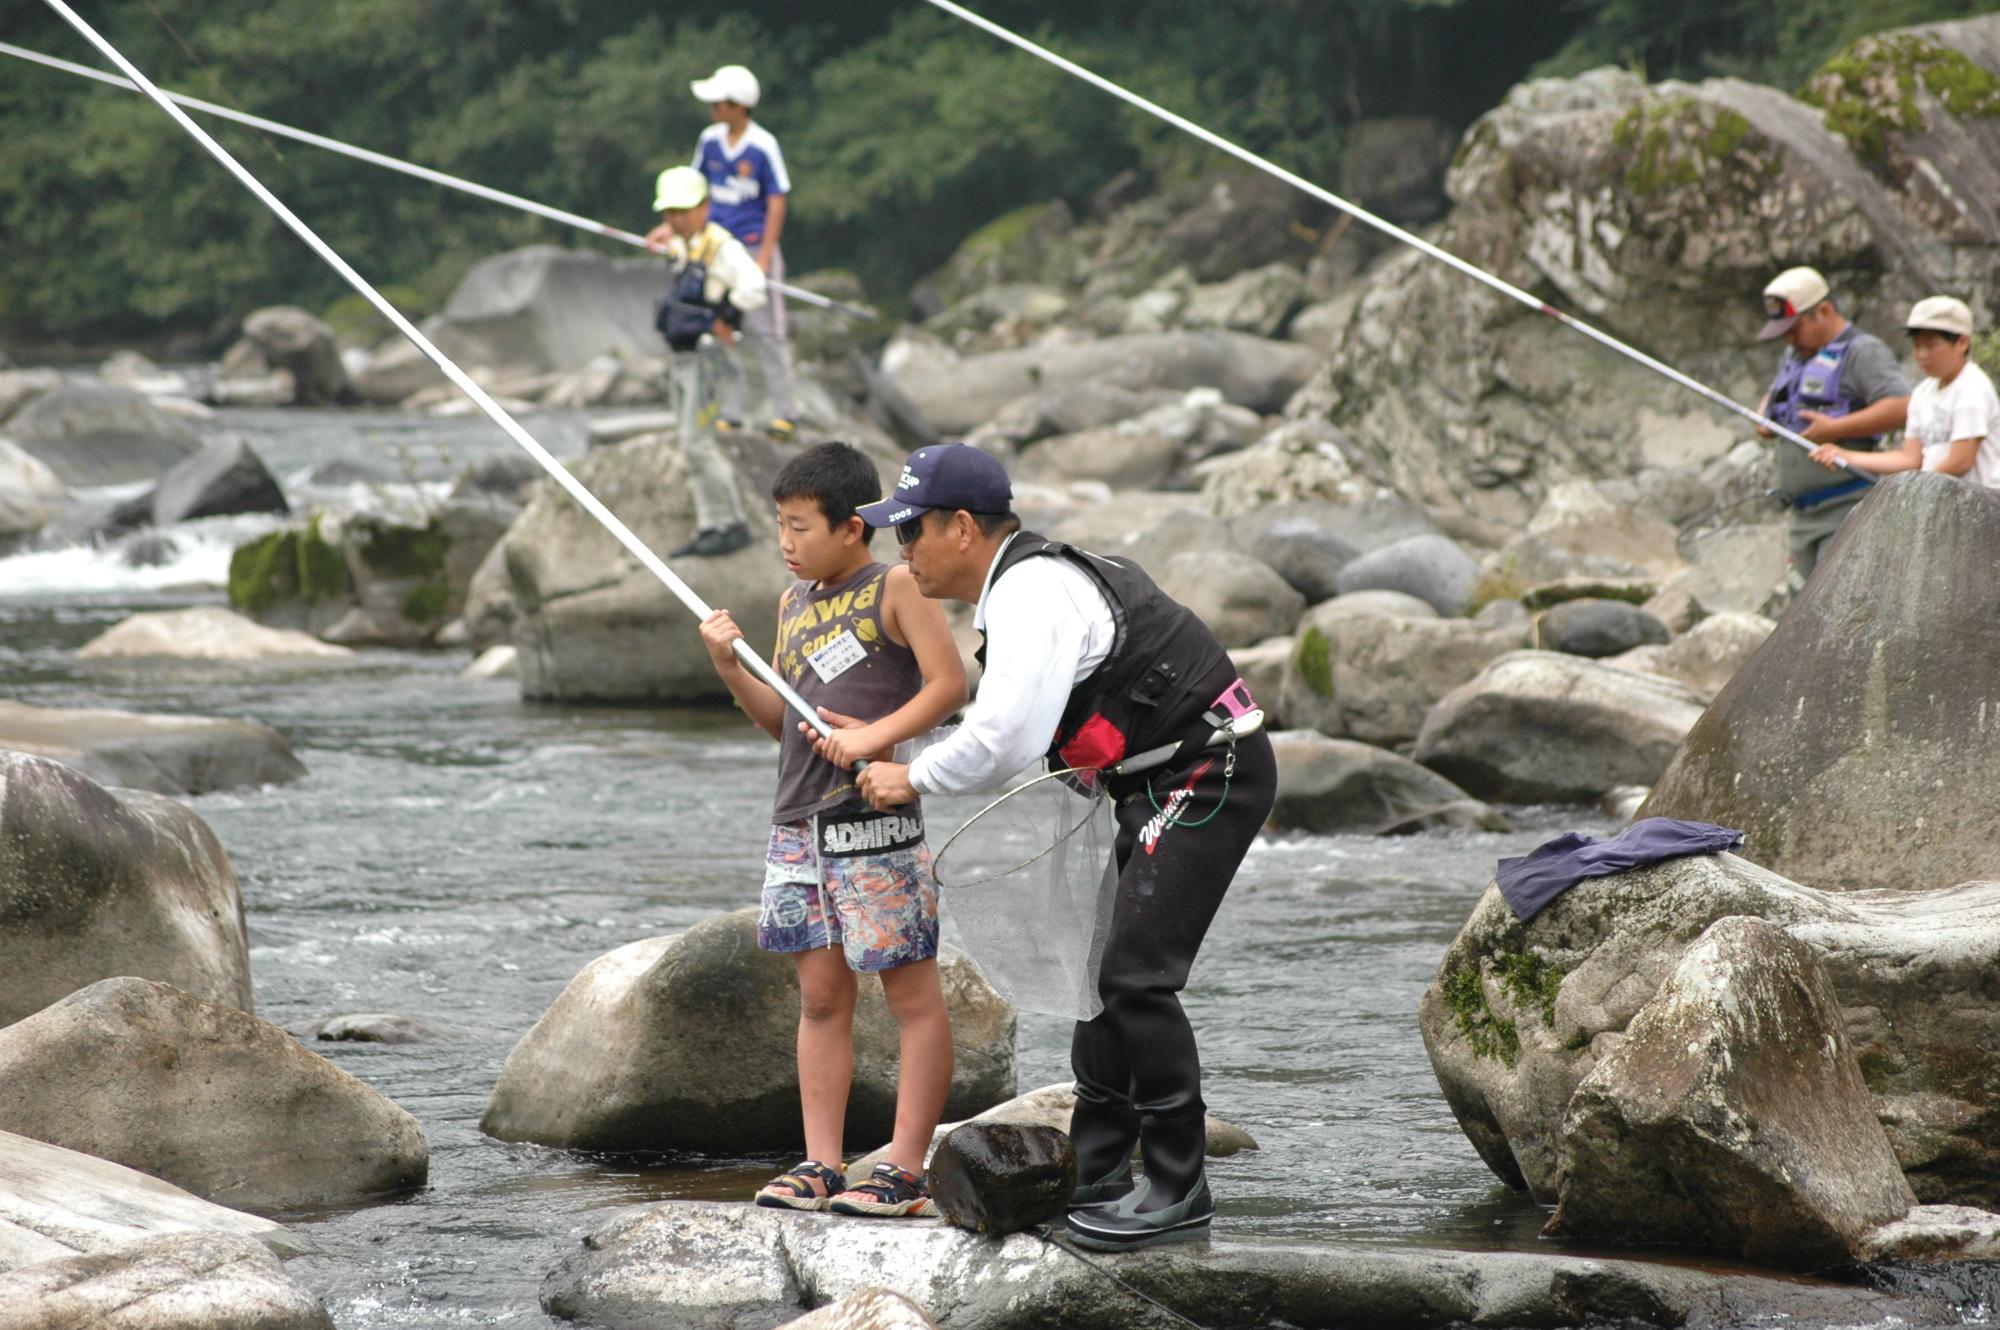 川で釣り客に鮎釣りを教えてもらっている子どもと釣り客の写真